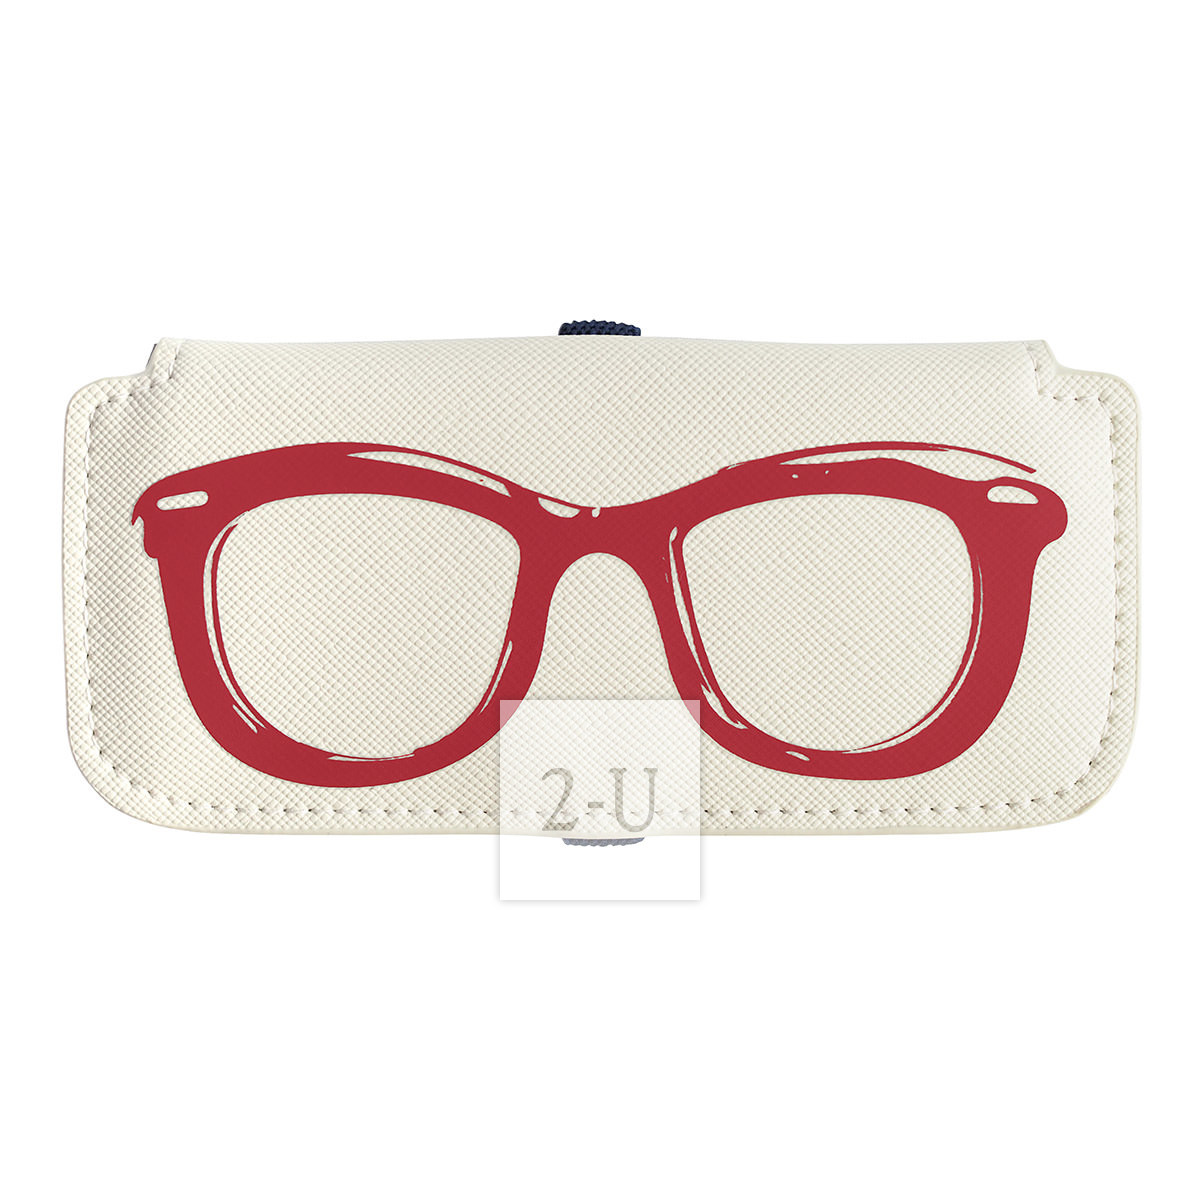 小巧眼鏡盒 白底紅鏡框